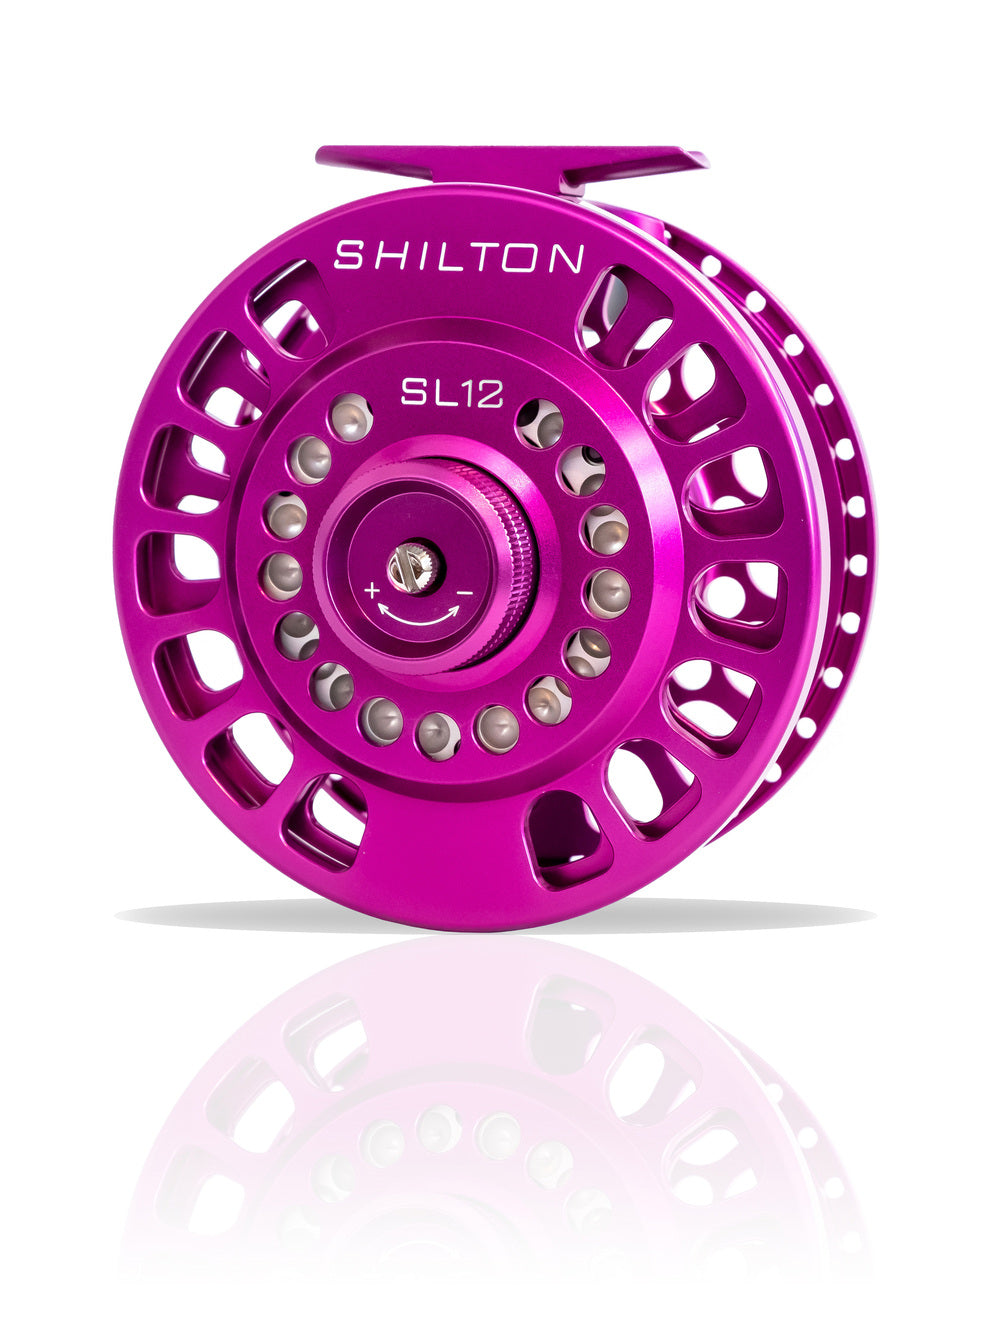 Shilton SL7 Reel (11-12wt) SL12 in Purple